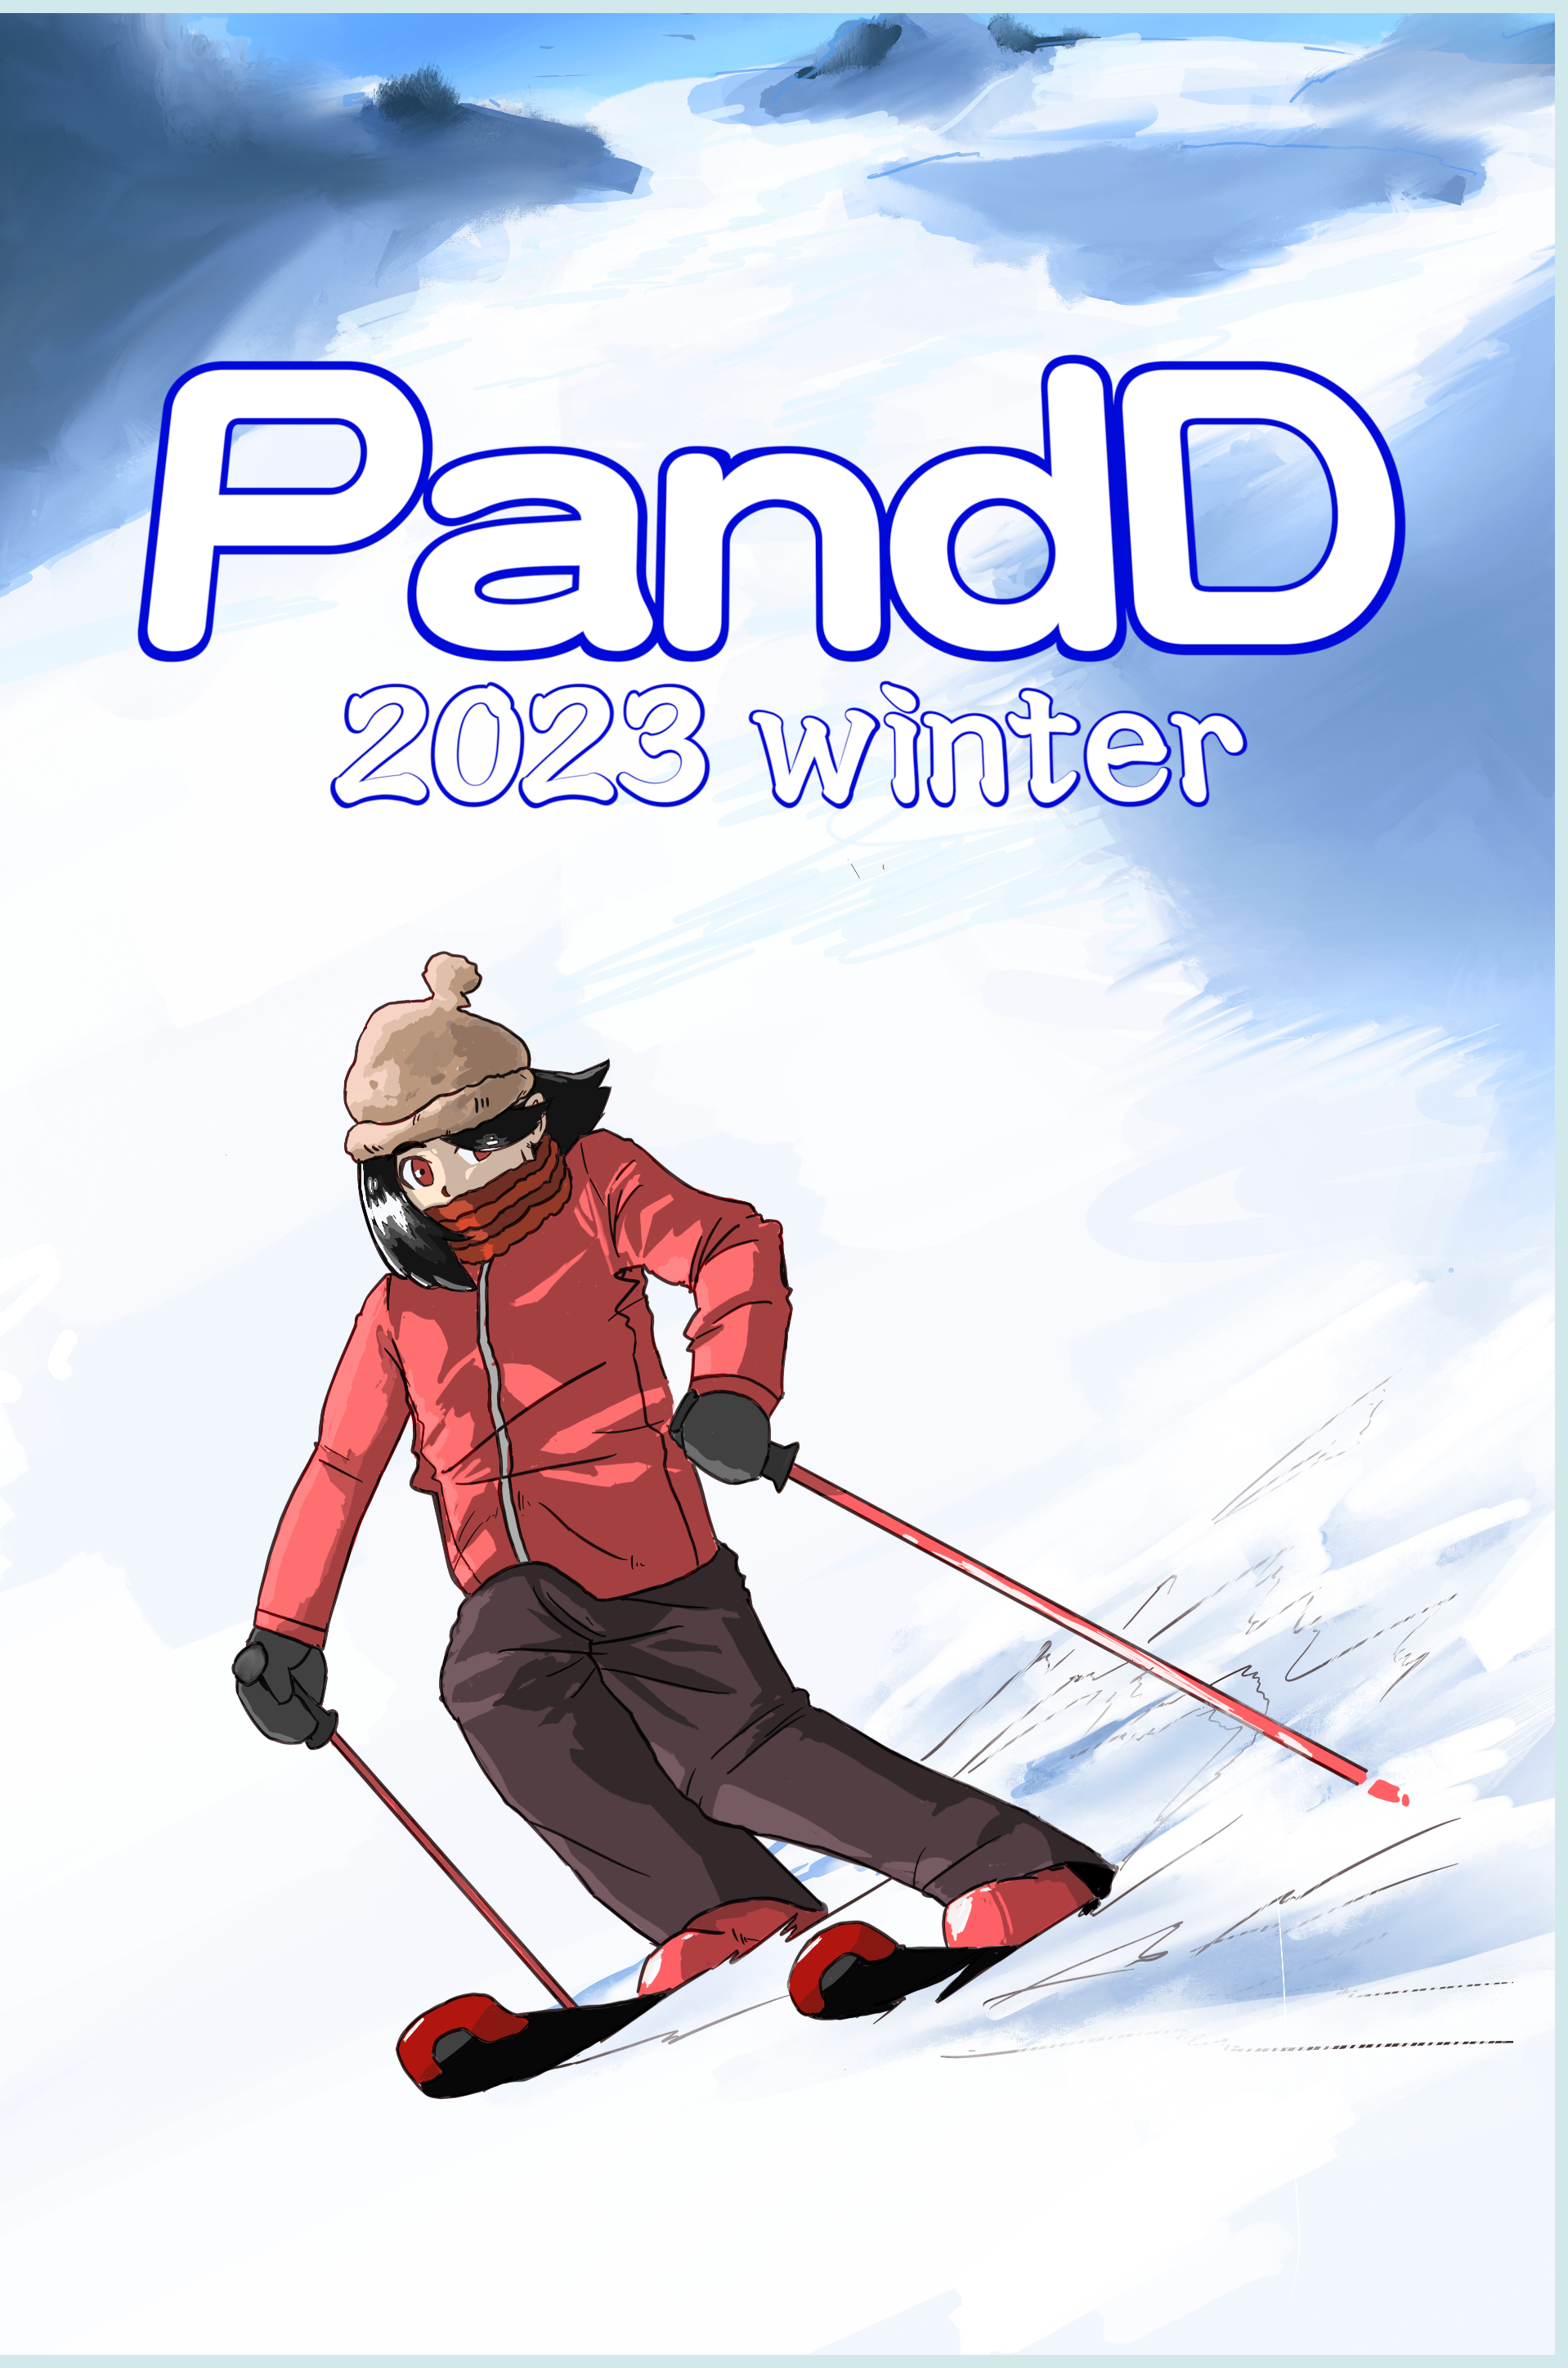 PandD 2023 winter